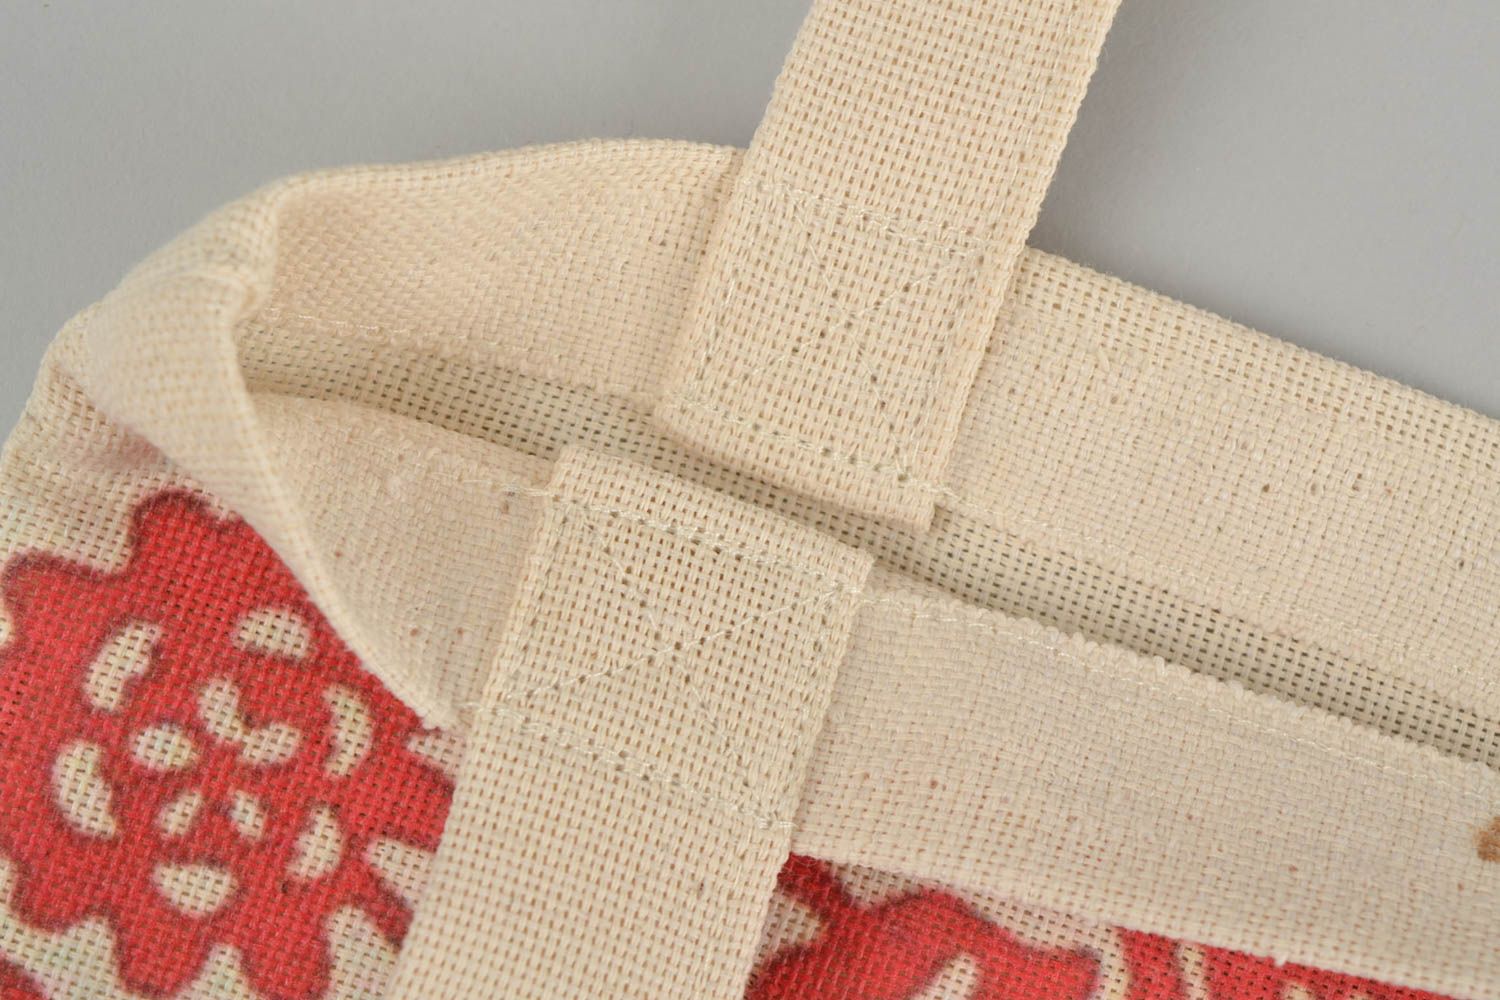 Текстильная сумка с орнаментом эко аксессуар ручной работы принтованная красная фото 2